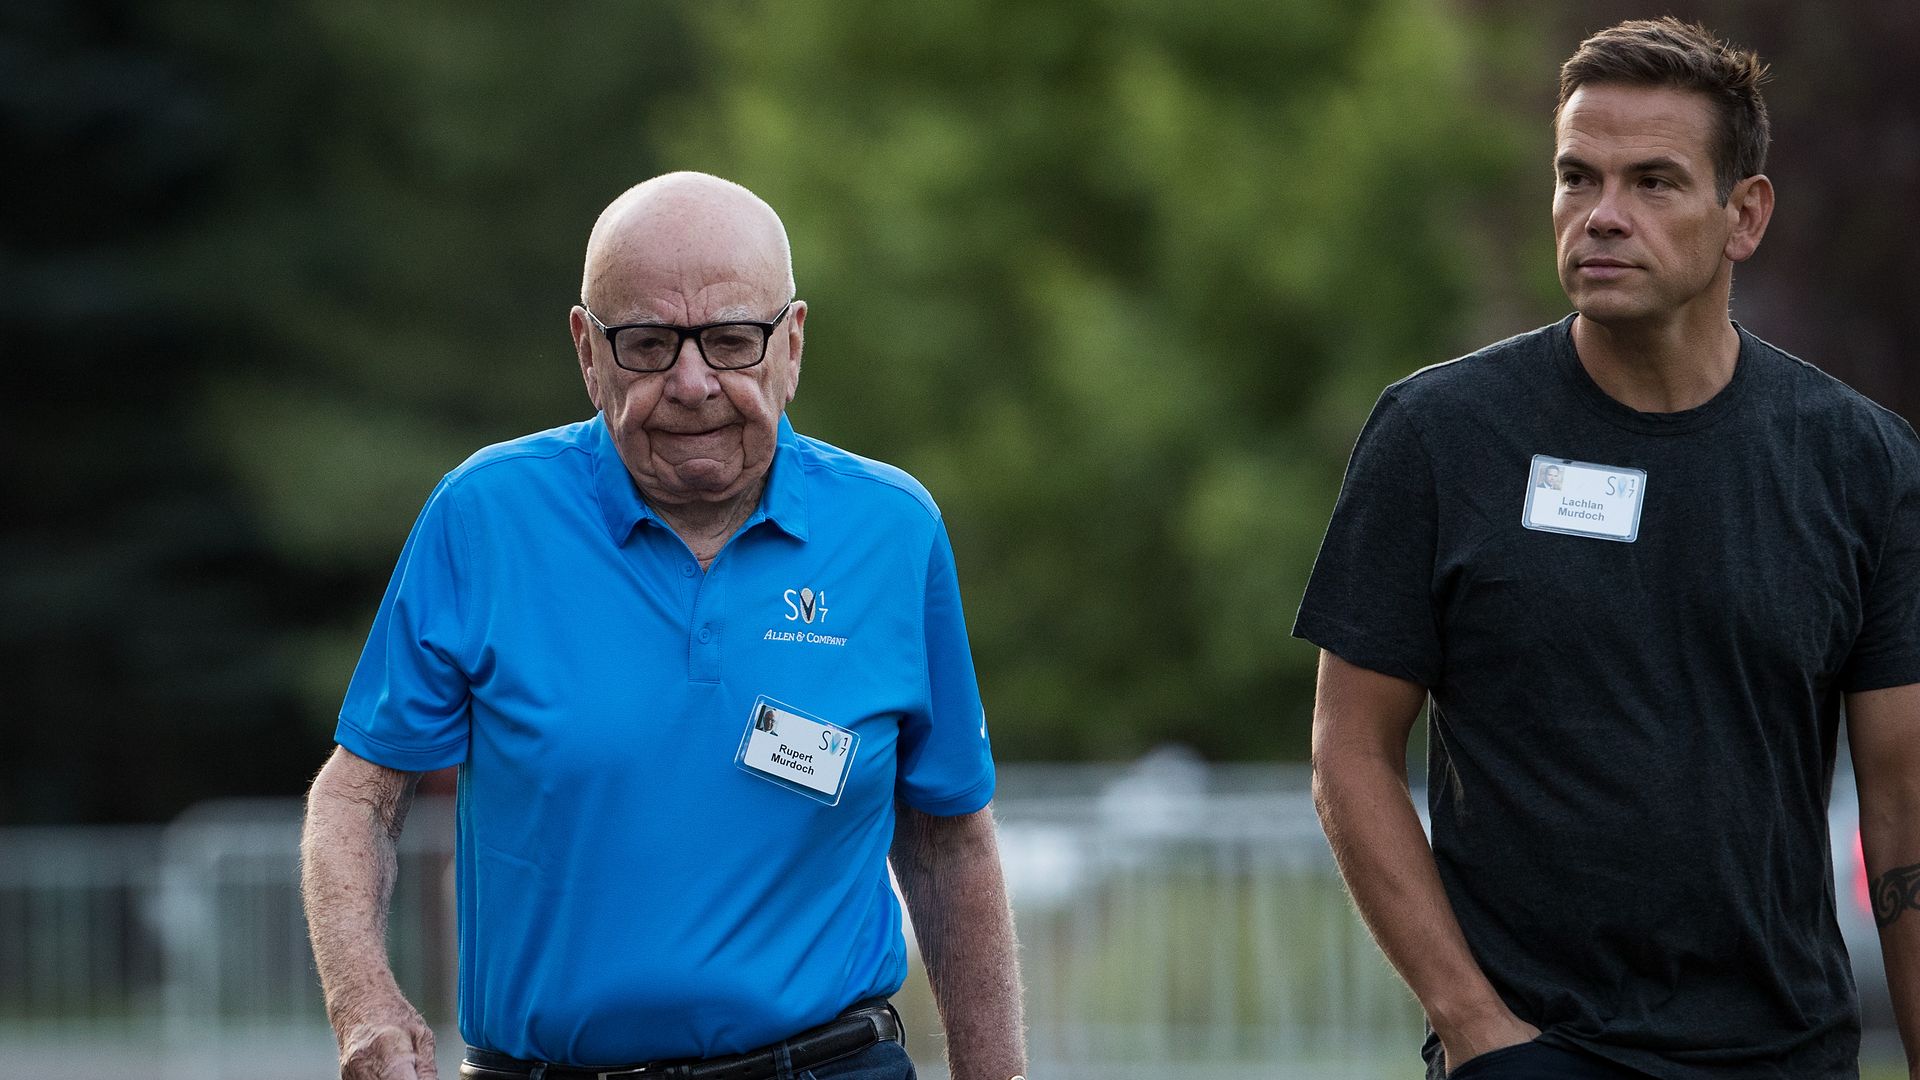 Rupert Murdoch, executive chairman of News Corp and chairman of Fox News, and Lachlan Murdoch, co-chairman of 21st Century Fox